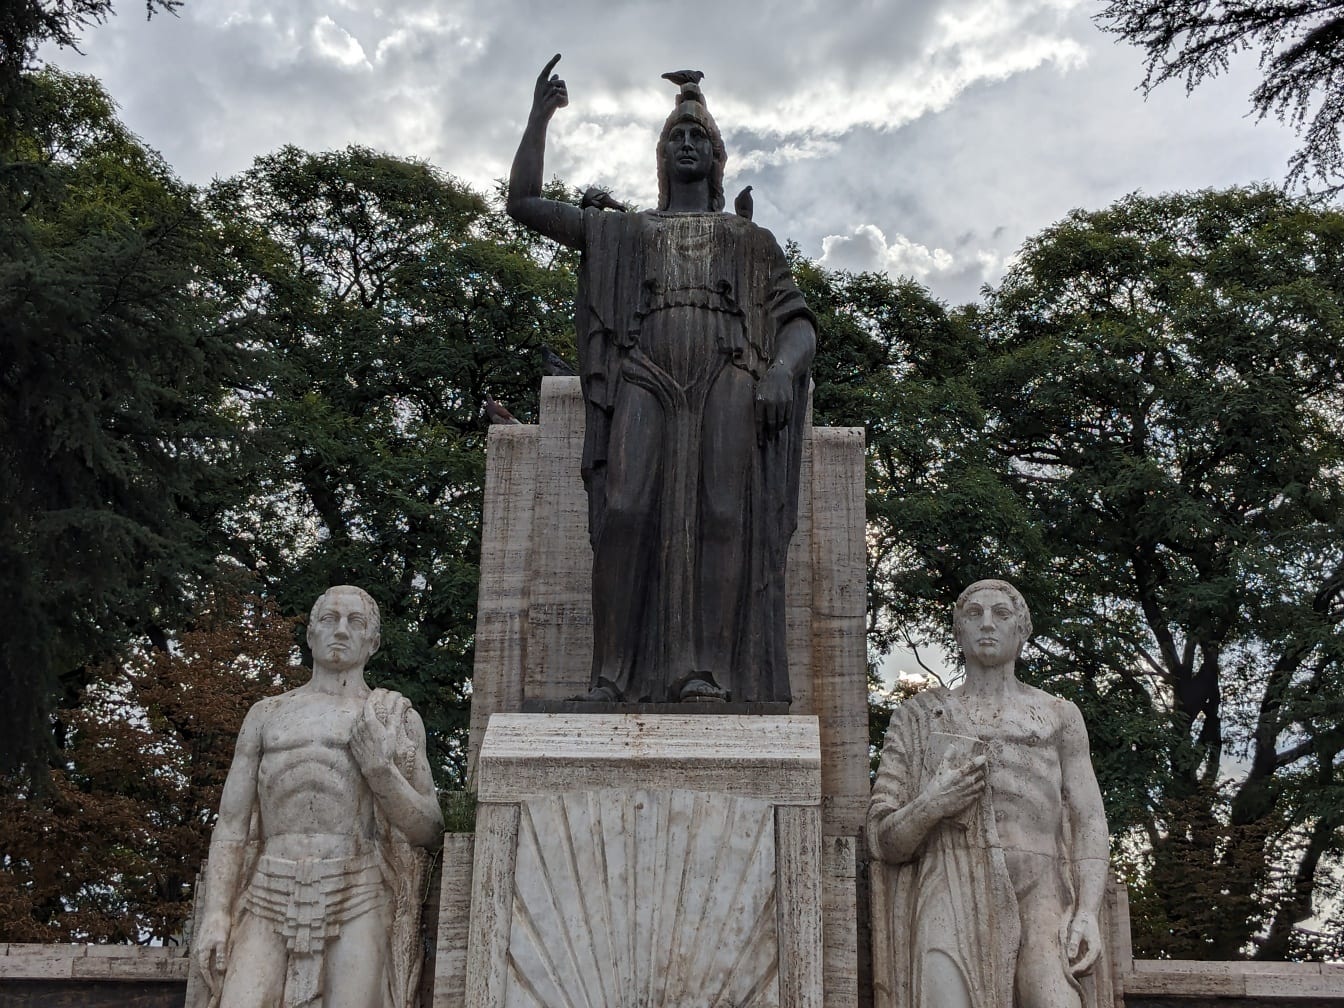 Άγαλμα στην πλατεία Ιταλίας (Plaza Italia) στη Μεντόζα της Αργεντινής